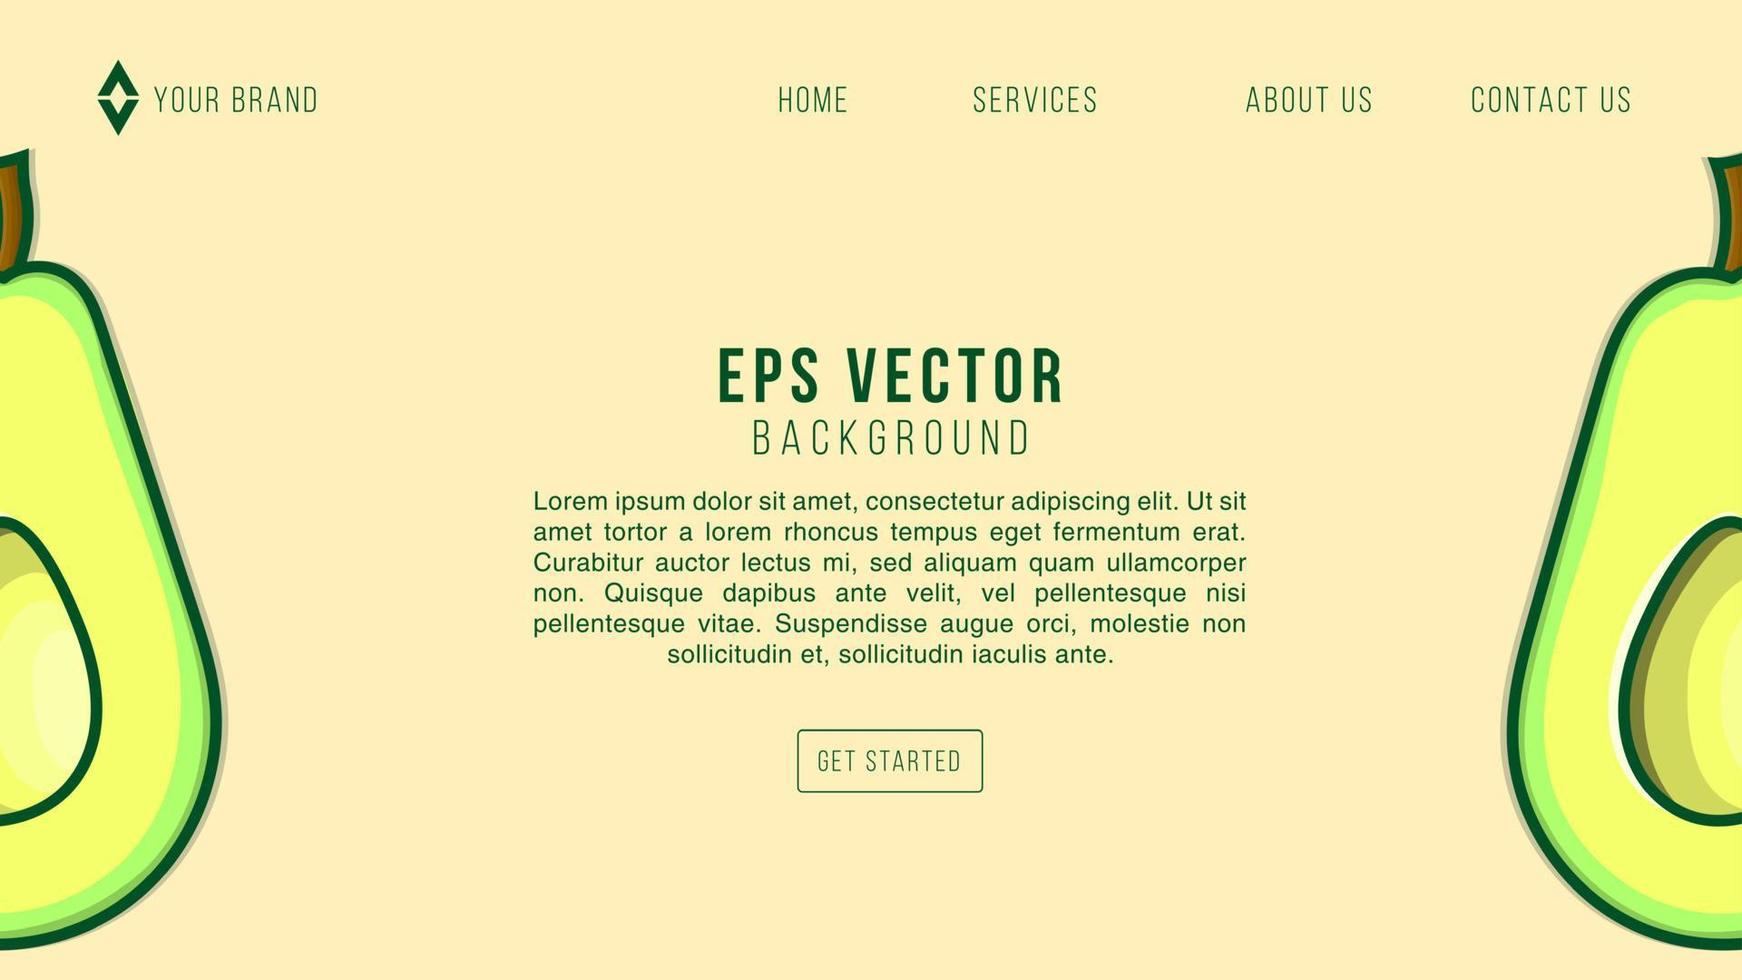 abacate web design fundo limonada eps 10 vetor para site, página de destino, página inicial, página da web, modelo da web